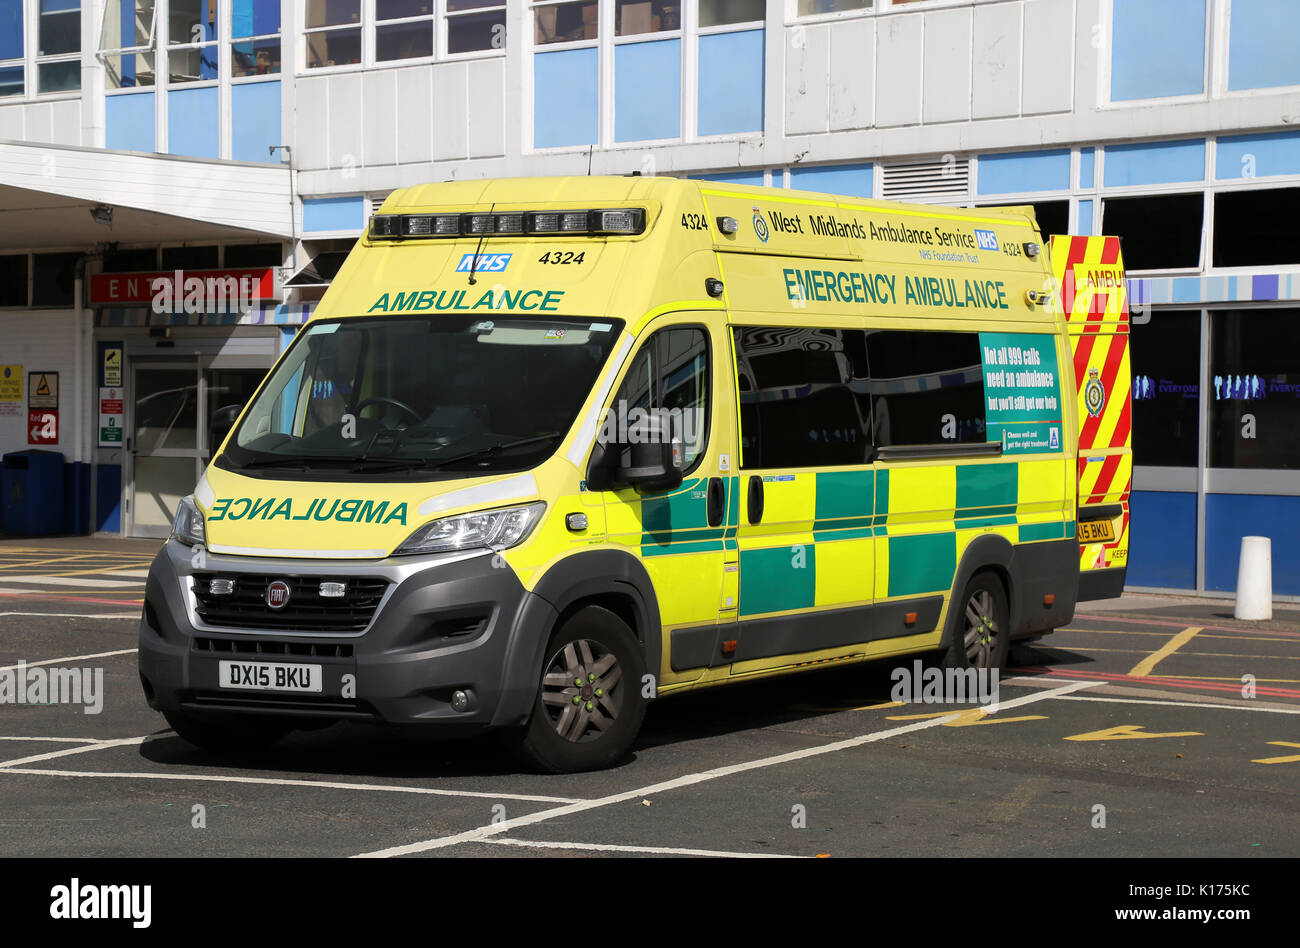 Ein Fiat Rettungswagen, die West Midlands Ambulance Service in Birmingham, UK gesehen. Stockfoto